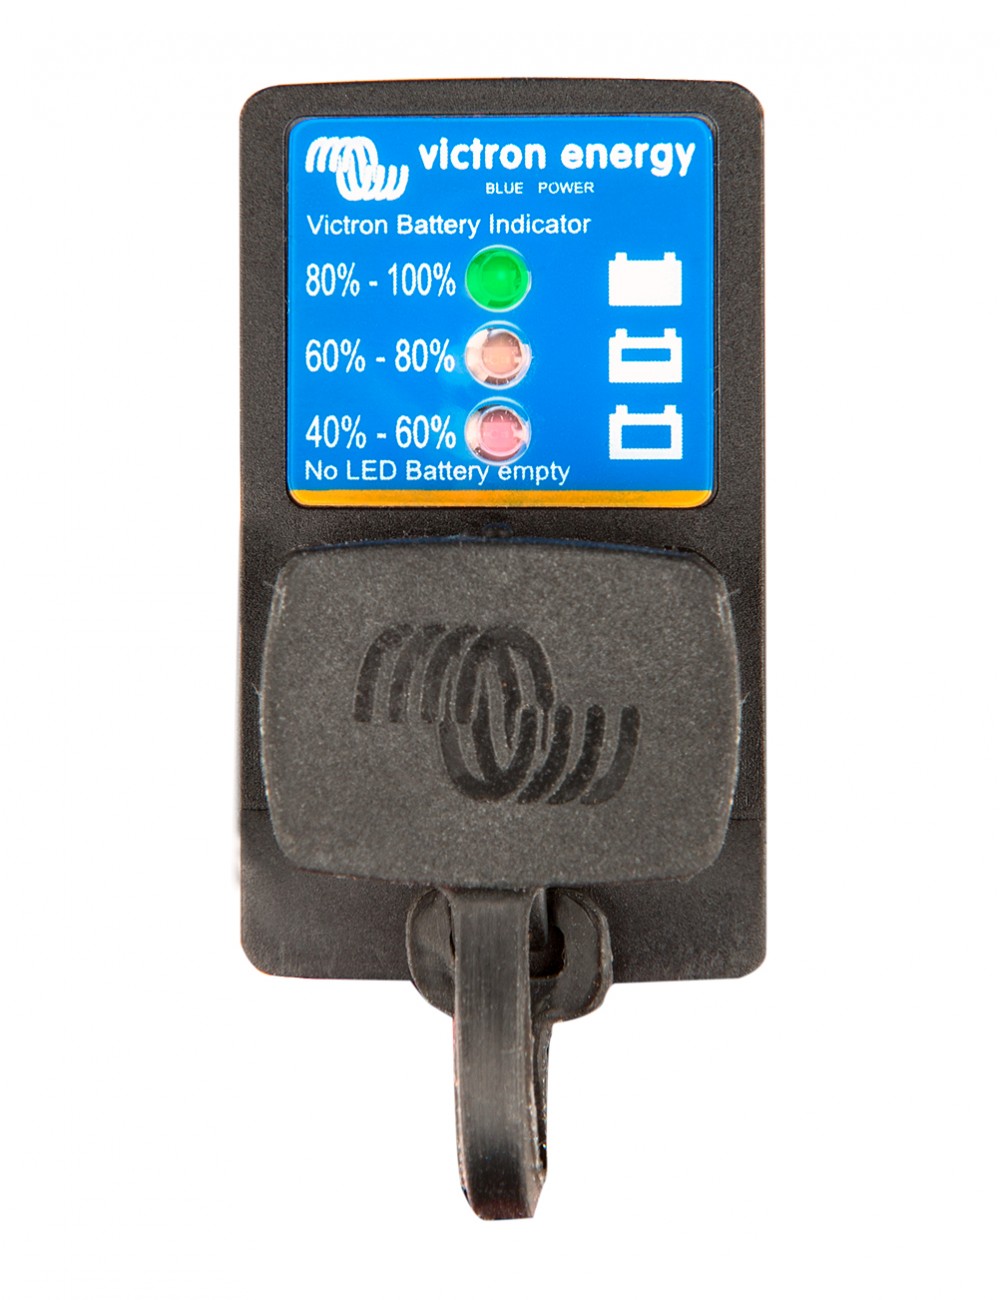 Panel indicador de la batería para cargadores Blue Smart IP65 de Victron - BPC900110114 -  - 8719076043072 - 1